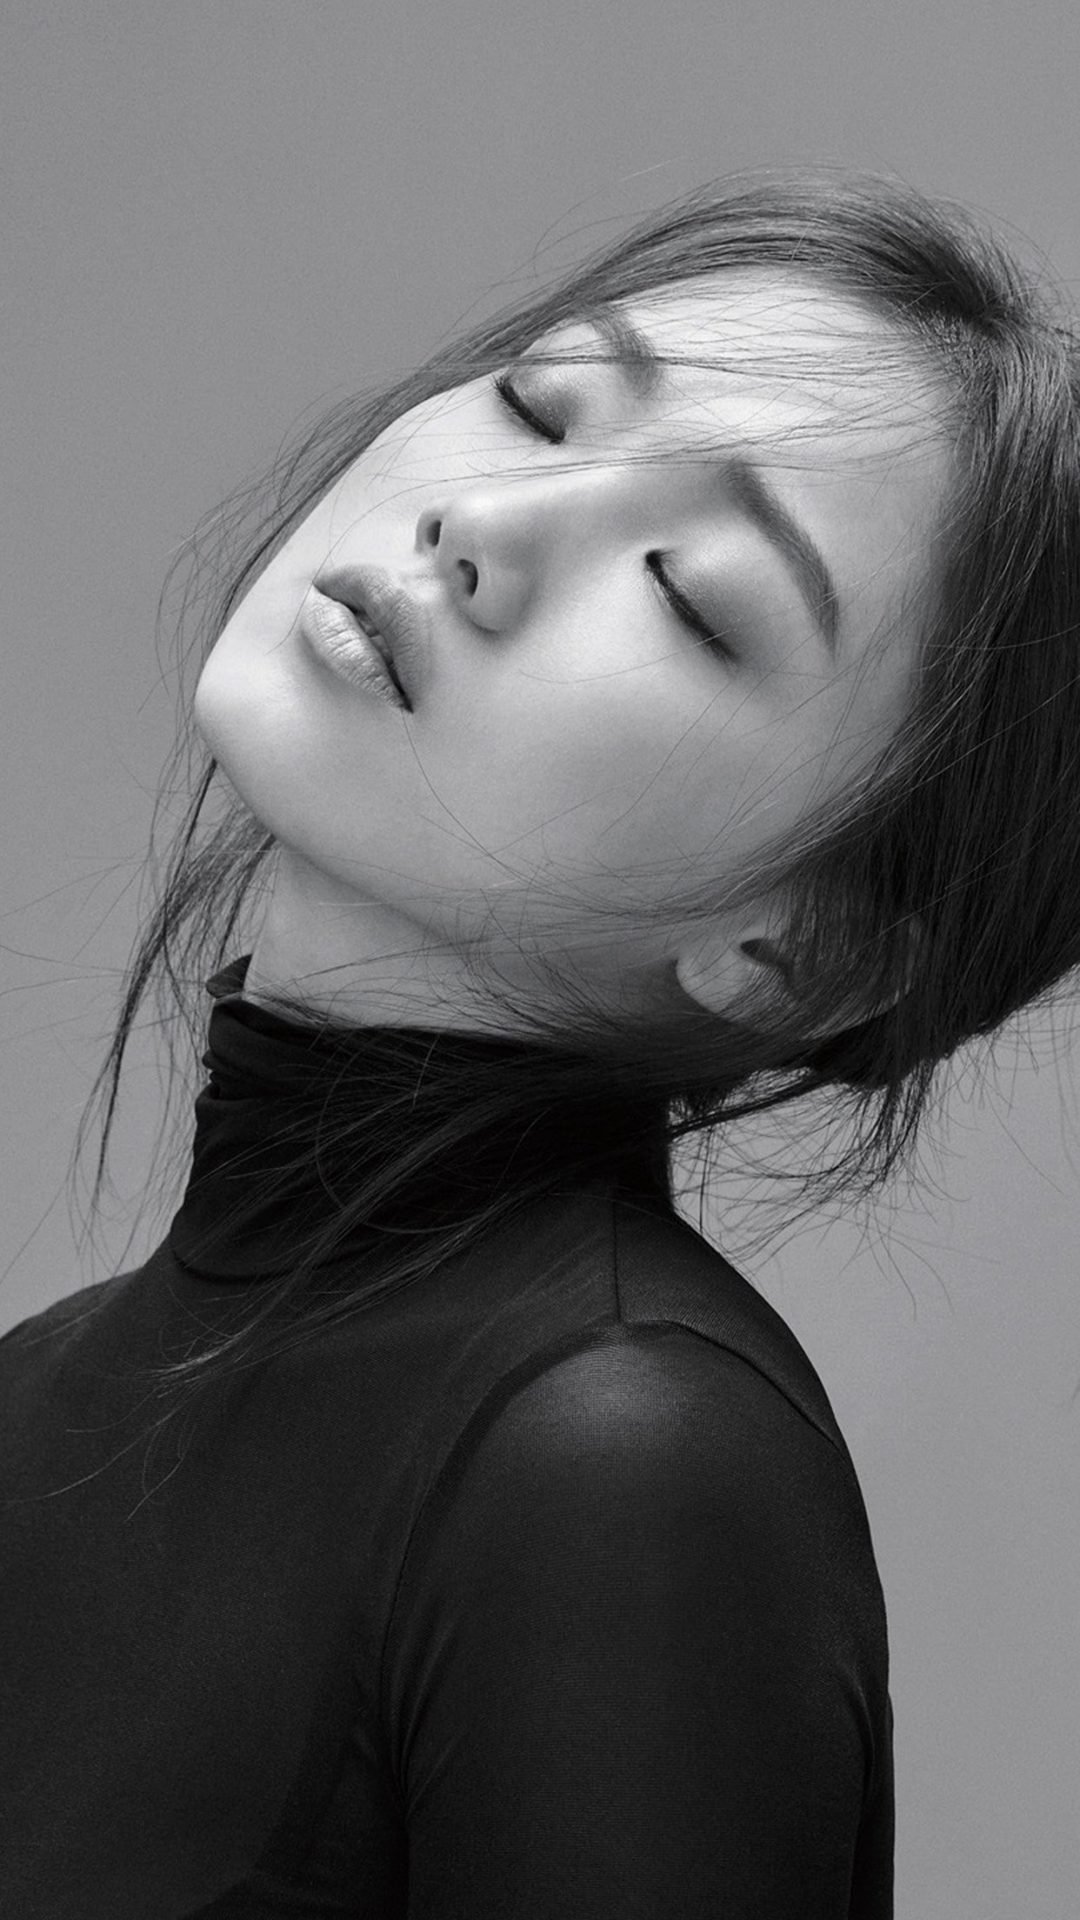 Kpop Lee Sungkyung Model Girl